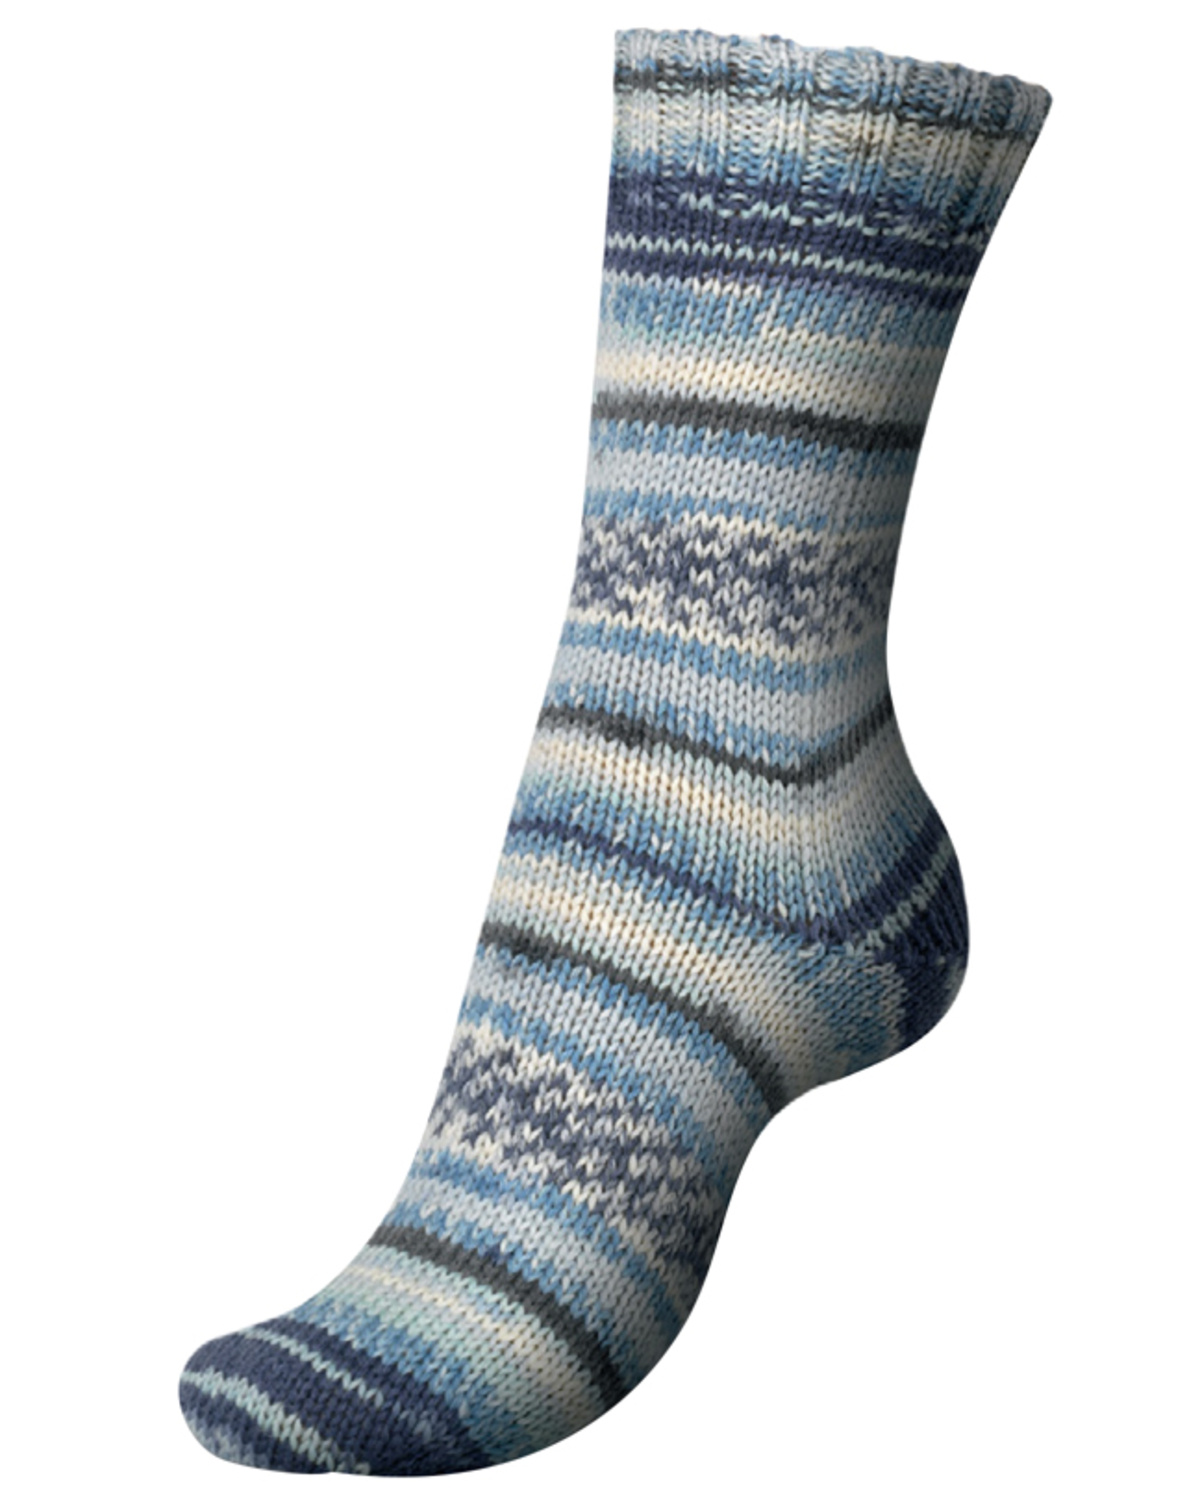 Basismønster på sokker i REGIA 6-trådet med Timeglashæl Carl J. Permin A/S